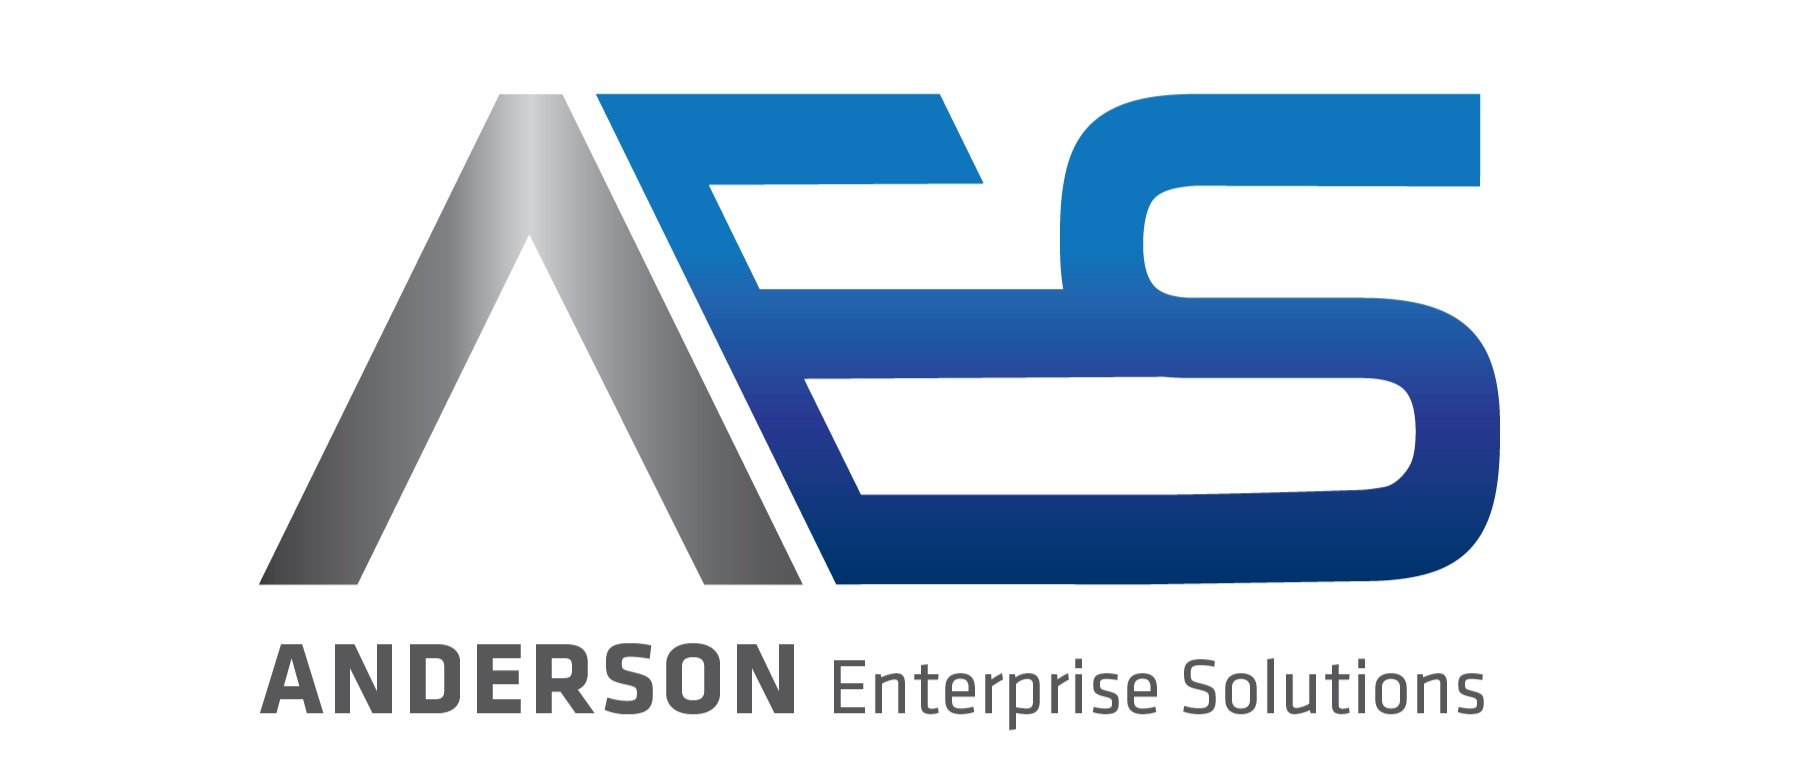 AES_logo.jpg